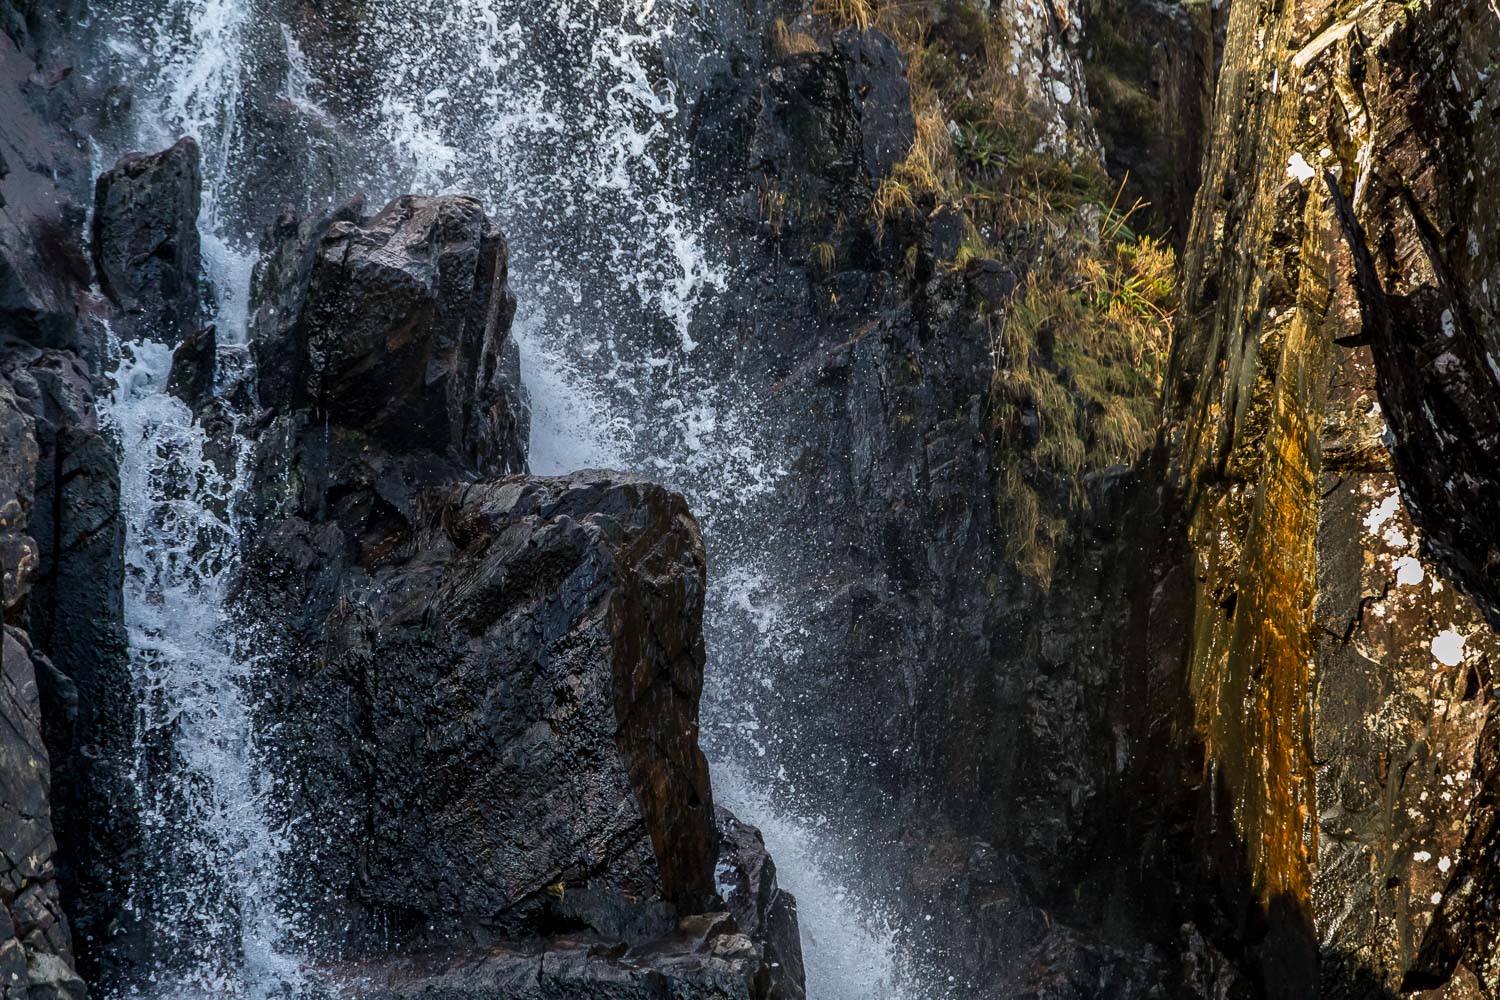 Sourmilk Gill waterfalls